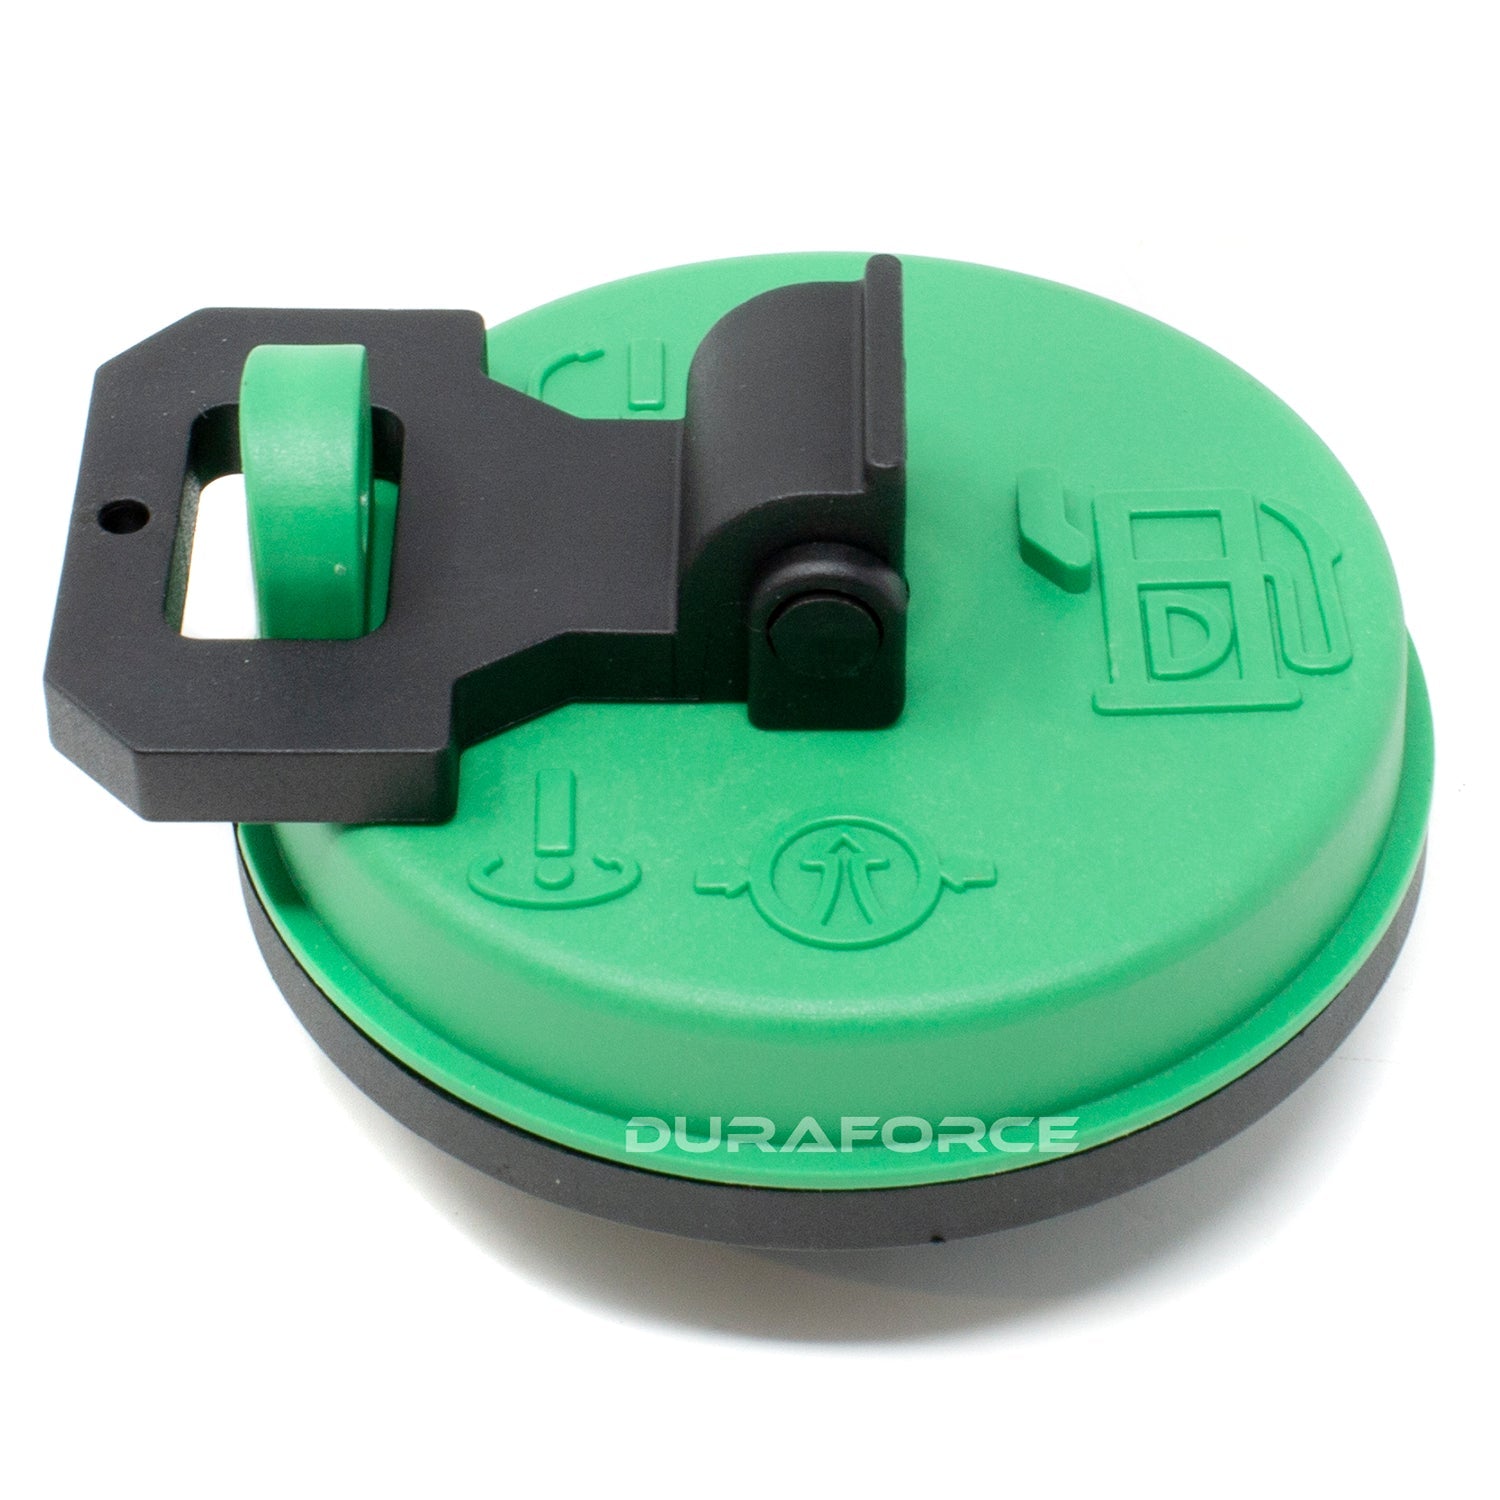 Duraforce 2216732, Diesel Fuel Cap For Caterpillar